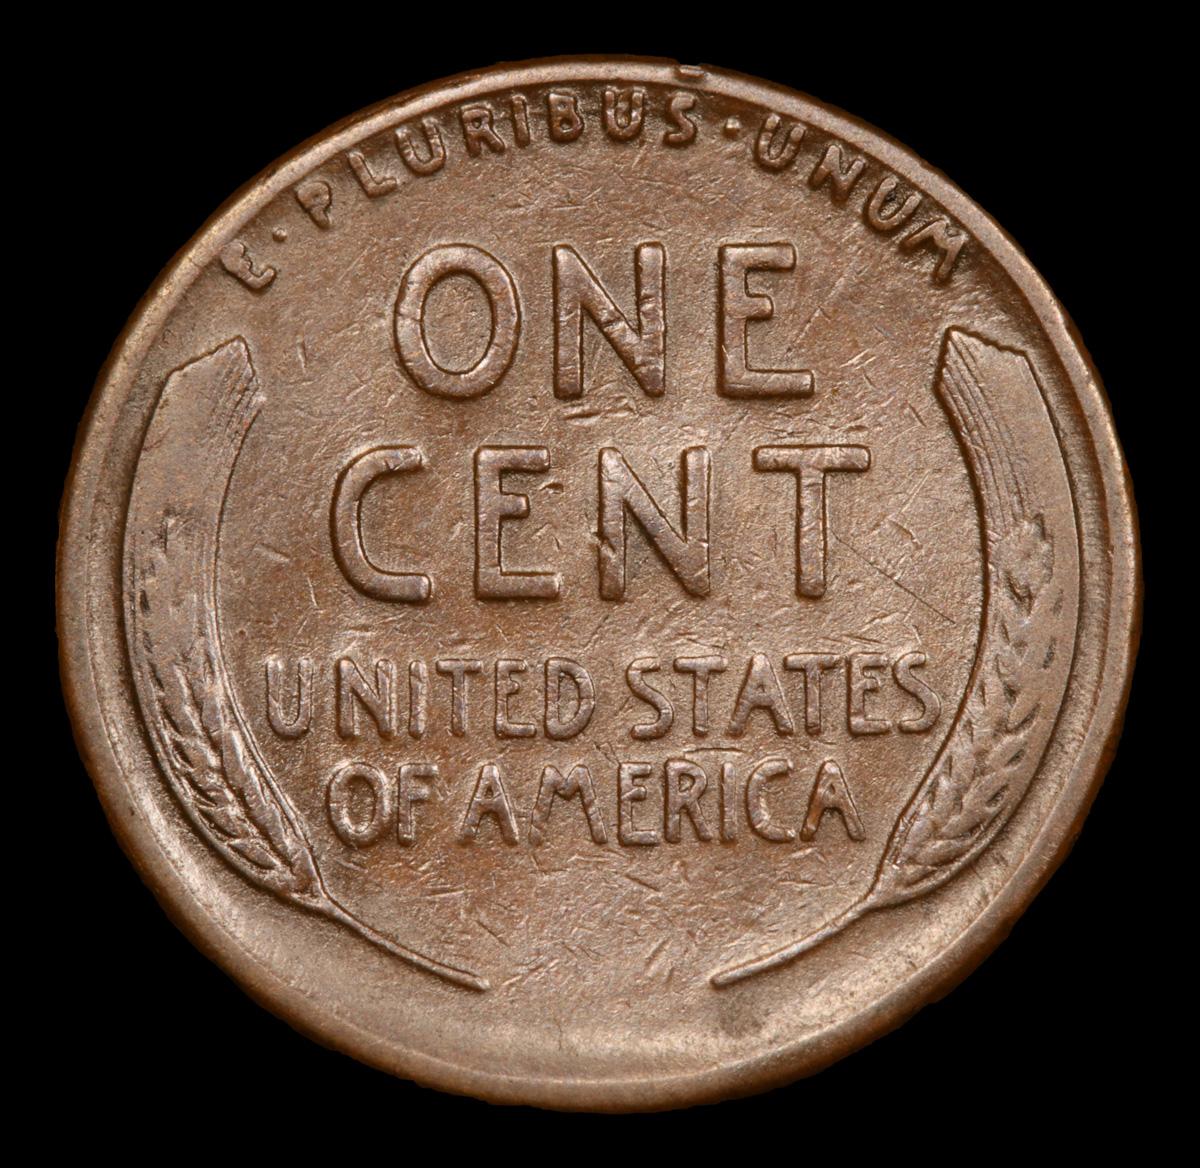 1926-s Lincoln Cent 1c Grades xf